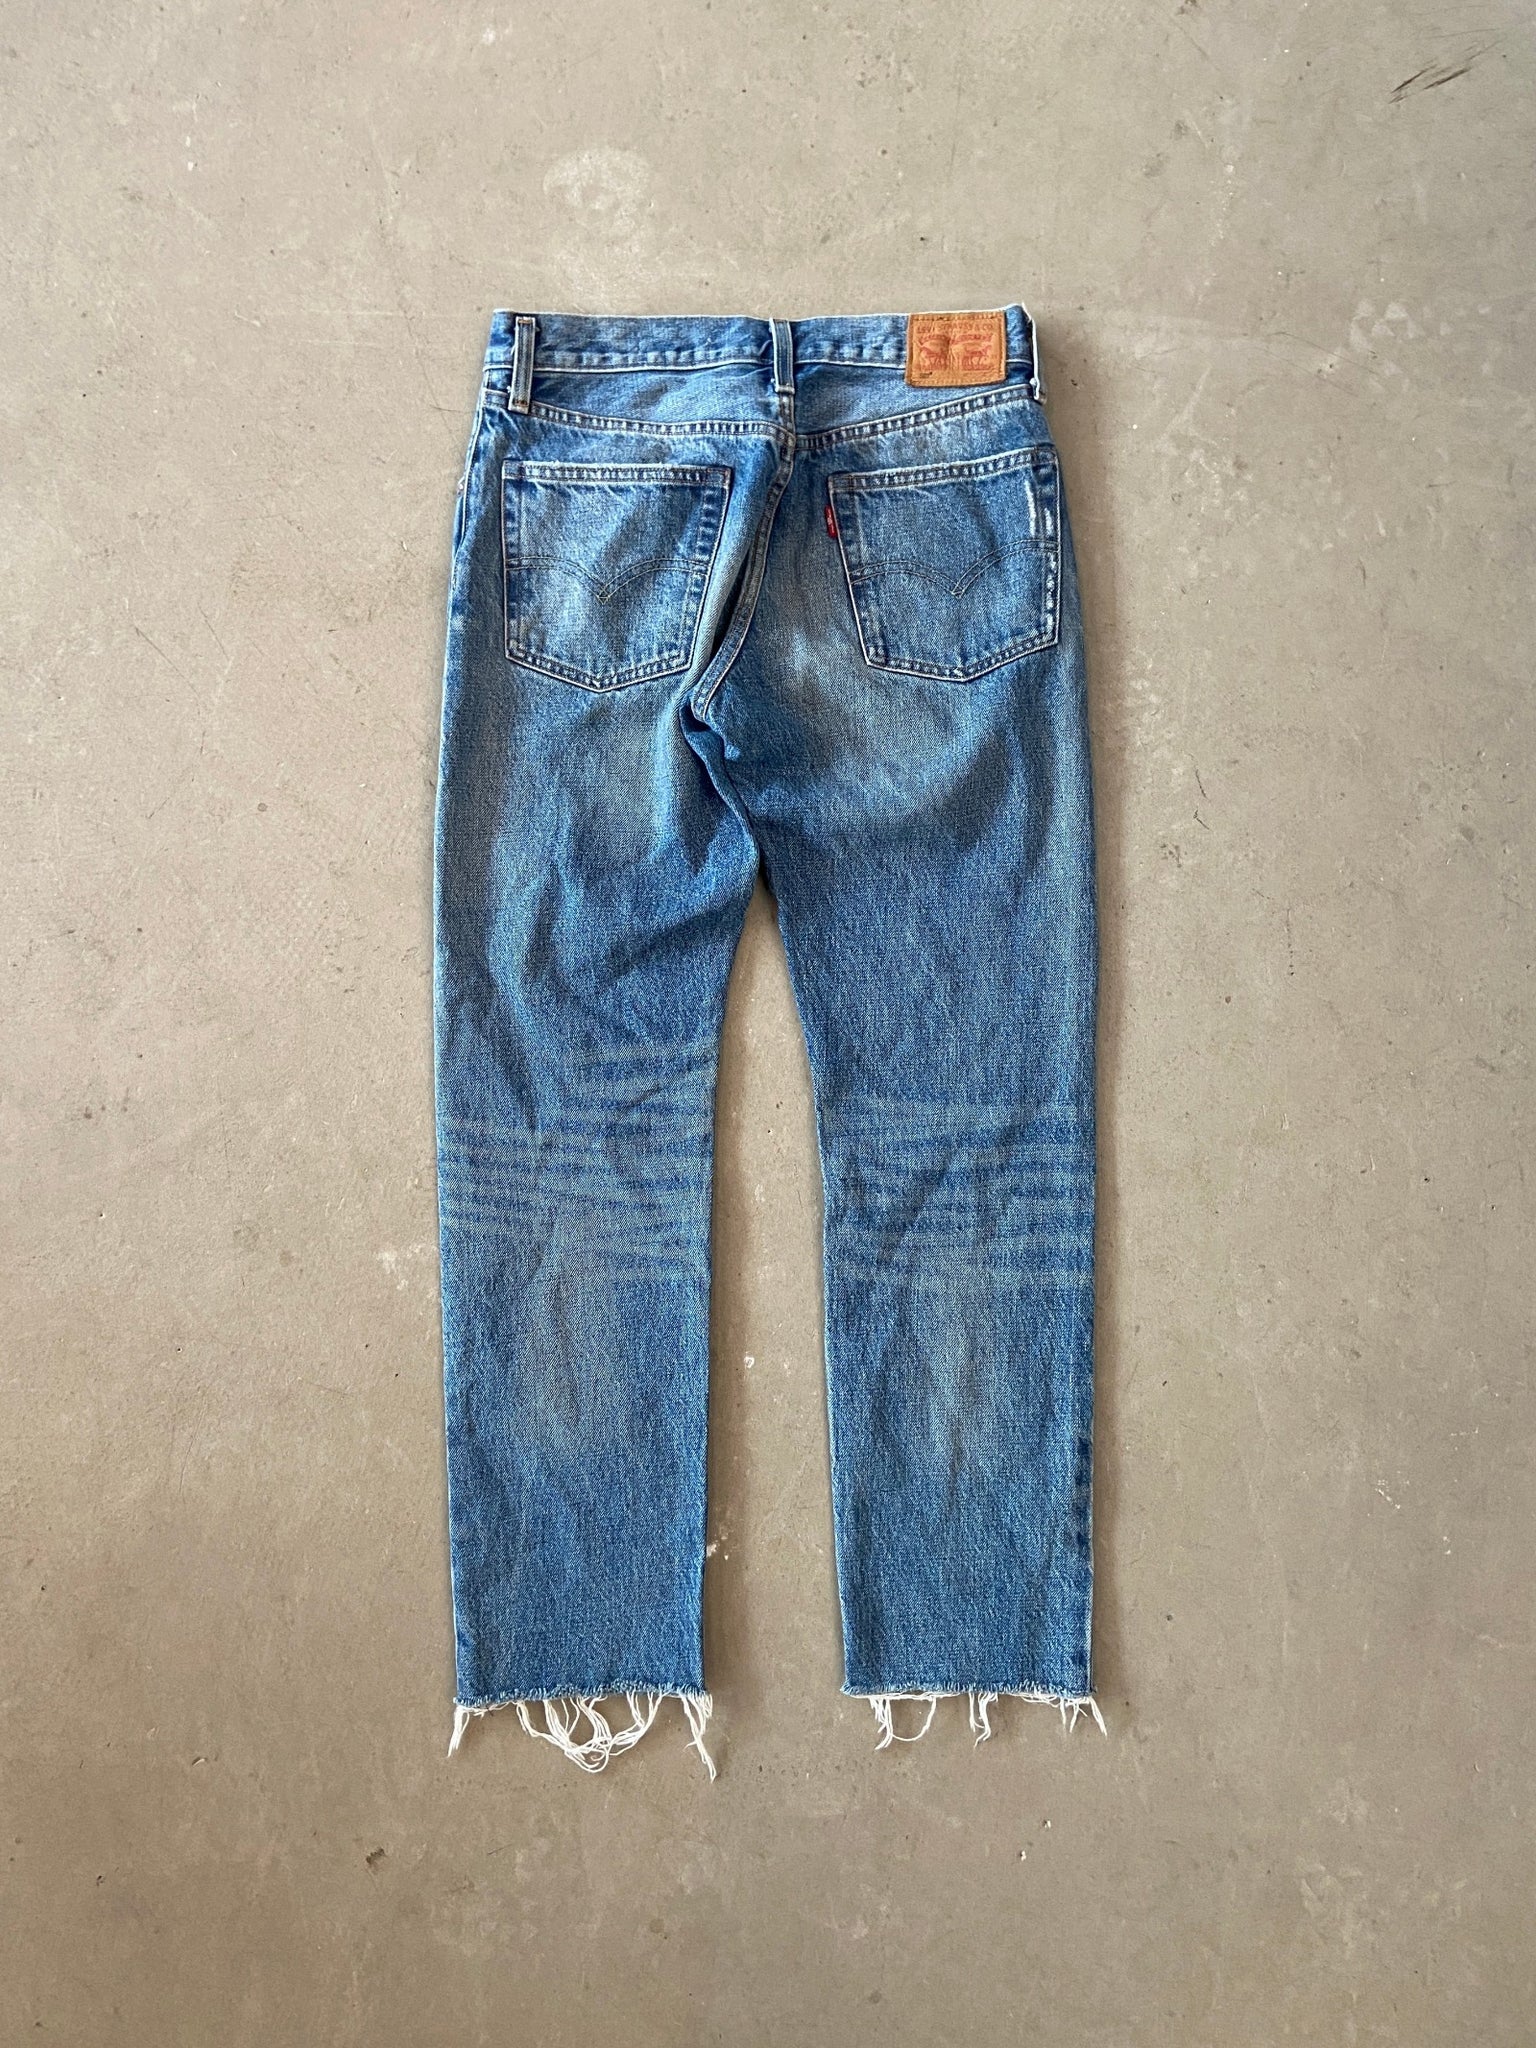 Levi’s 501 Jeans - 29 x 28